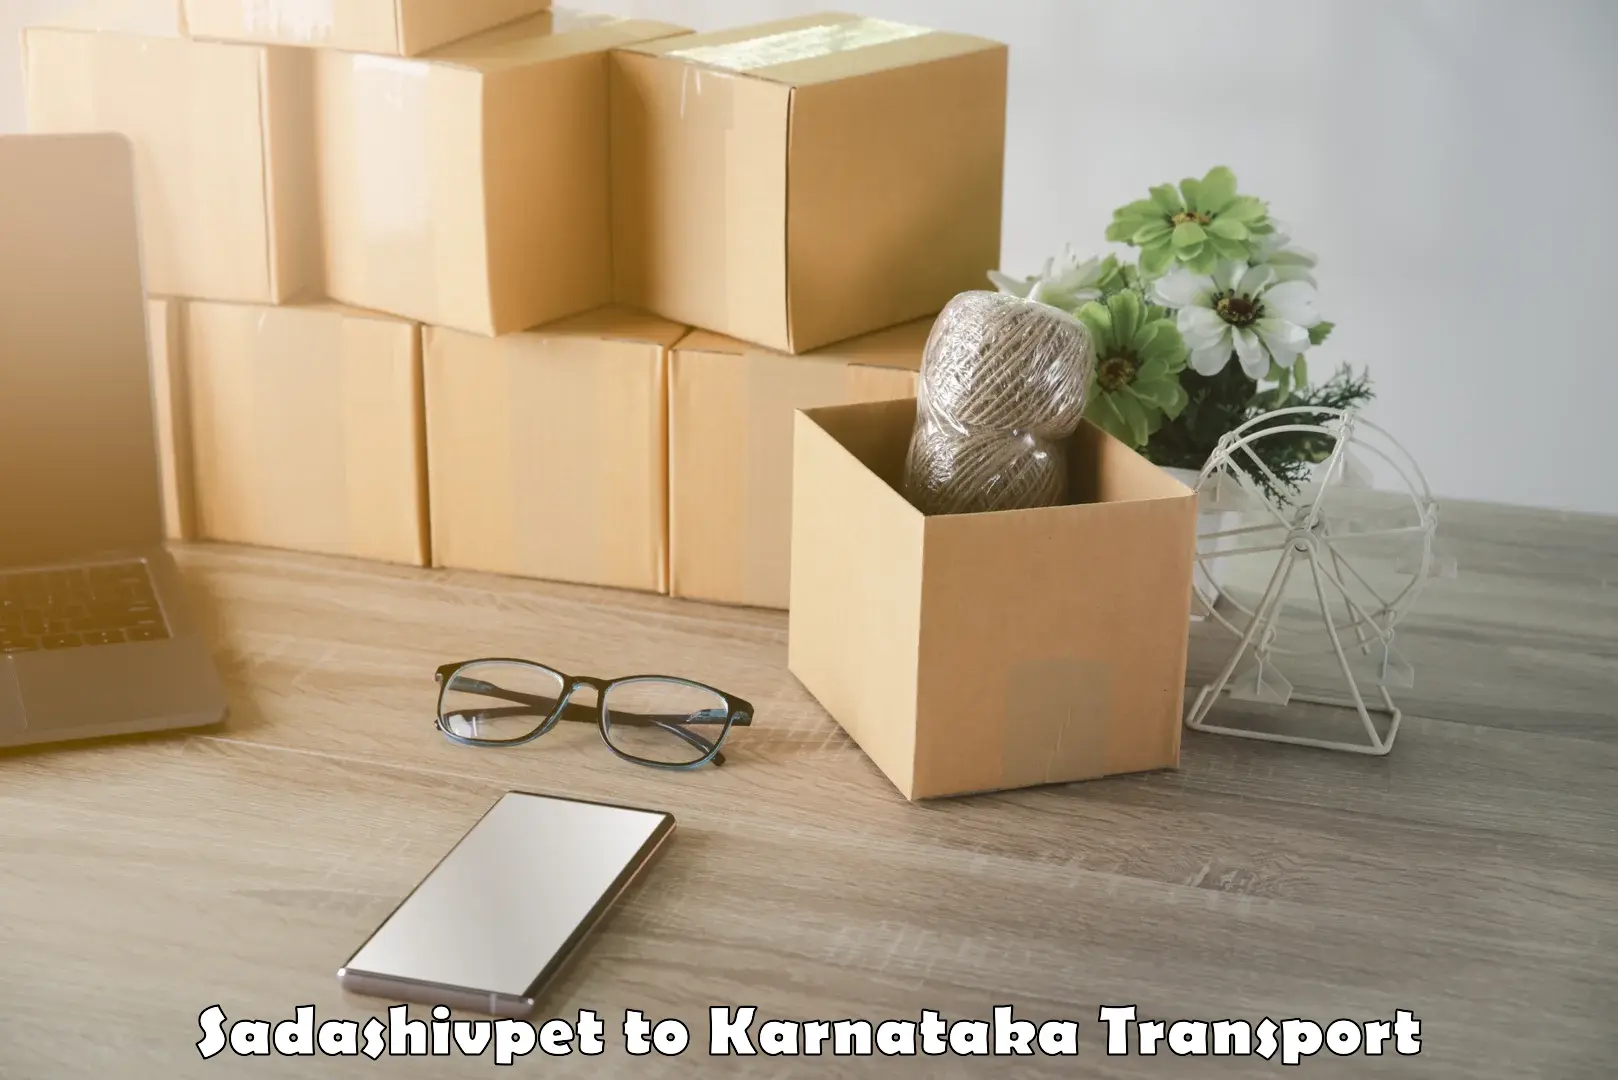 Online transport booking Sadashivpet to Krishnarajanagara